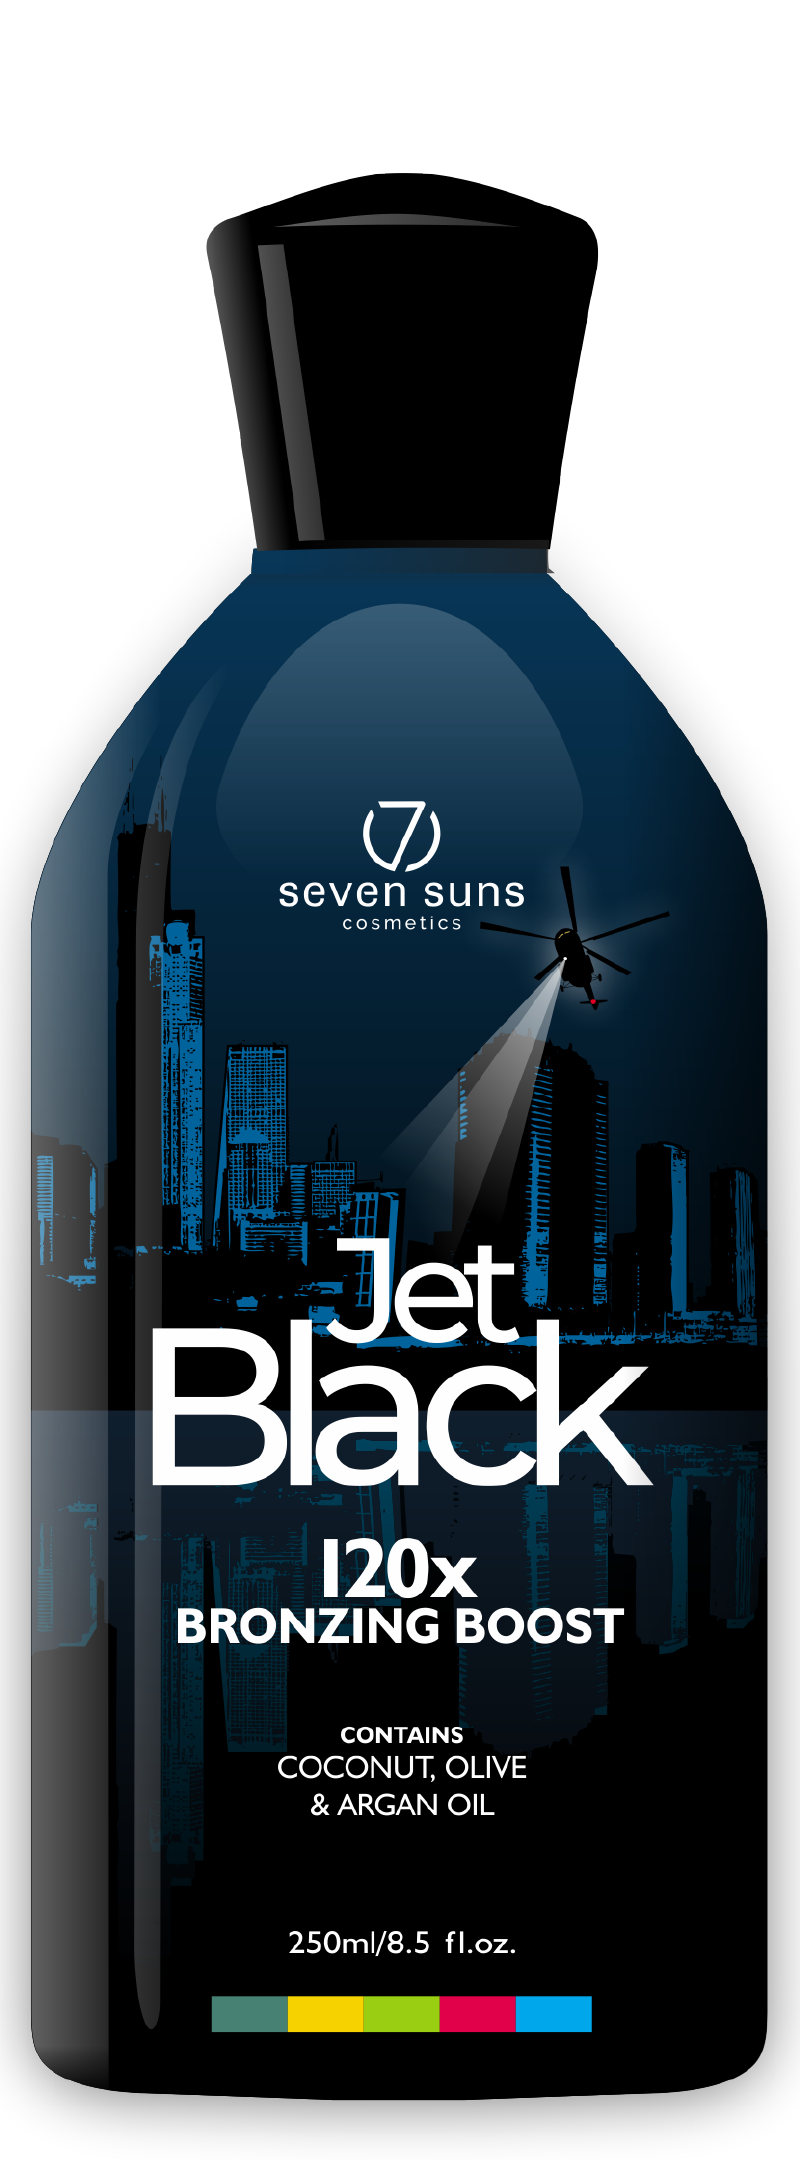 Jet Black cosmetic bottle